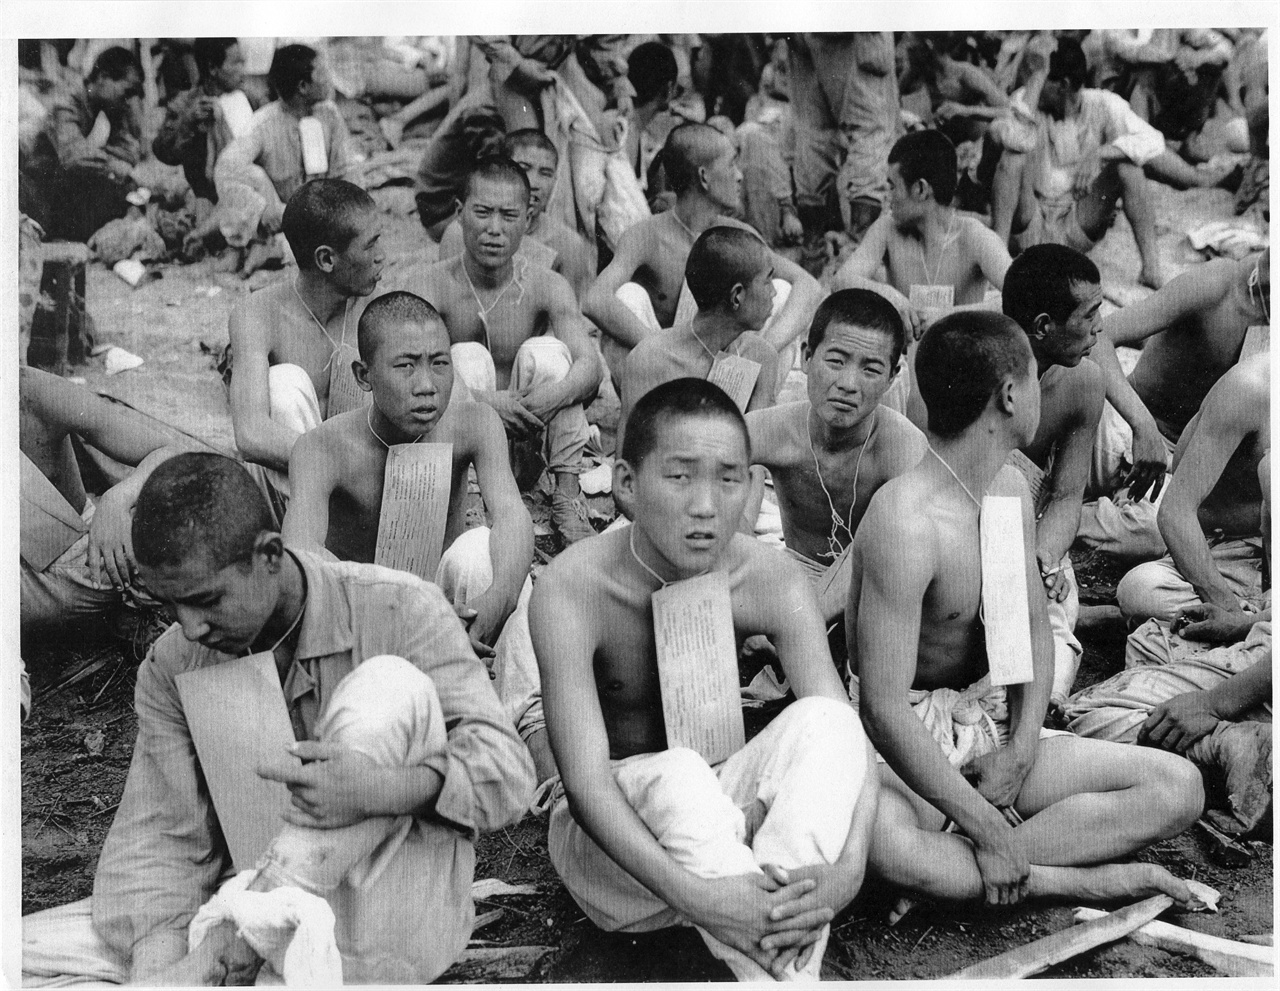 1950. 10. 2. 인천, 포로로 잡힌 인민군들. 수용소 입소 전 인적사항을 목에 걸고 있다. 